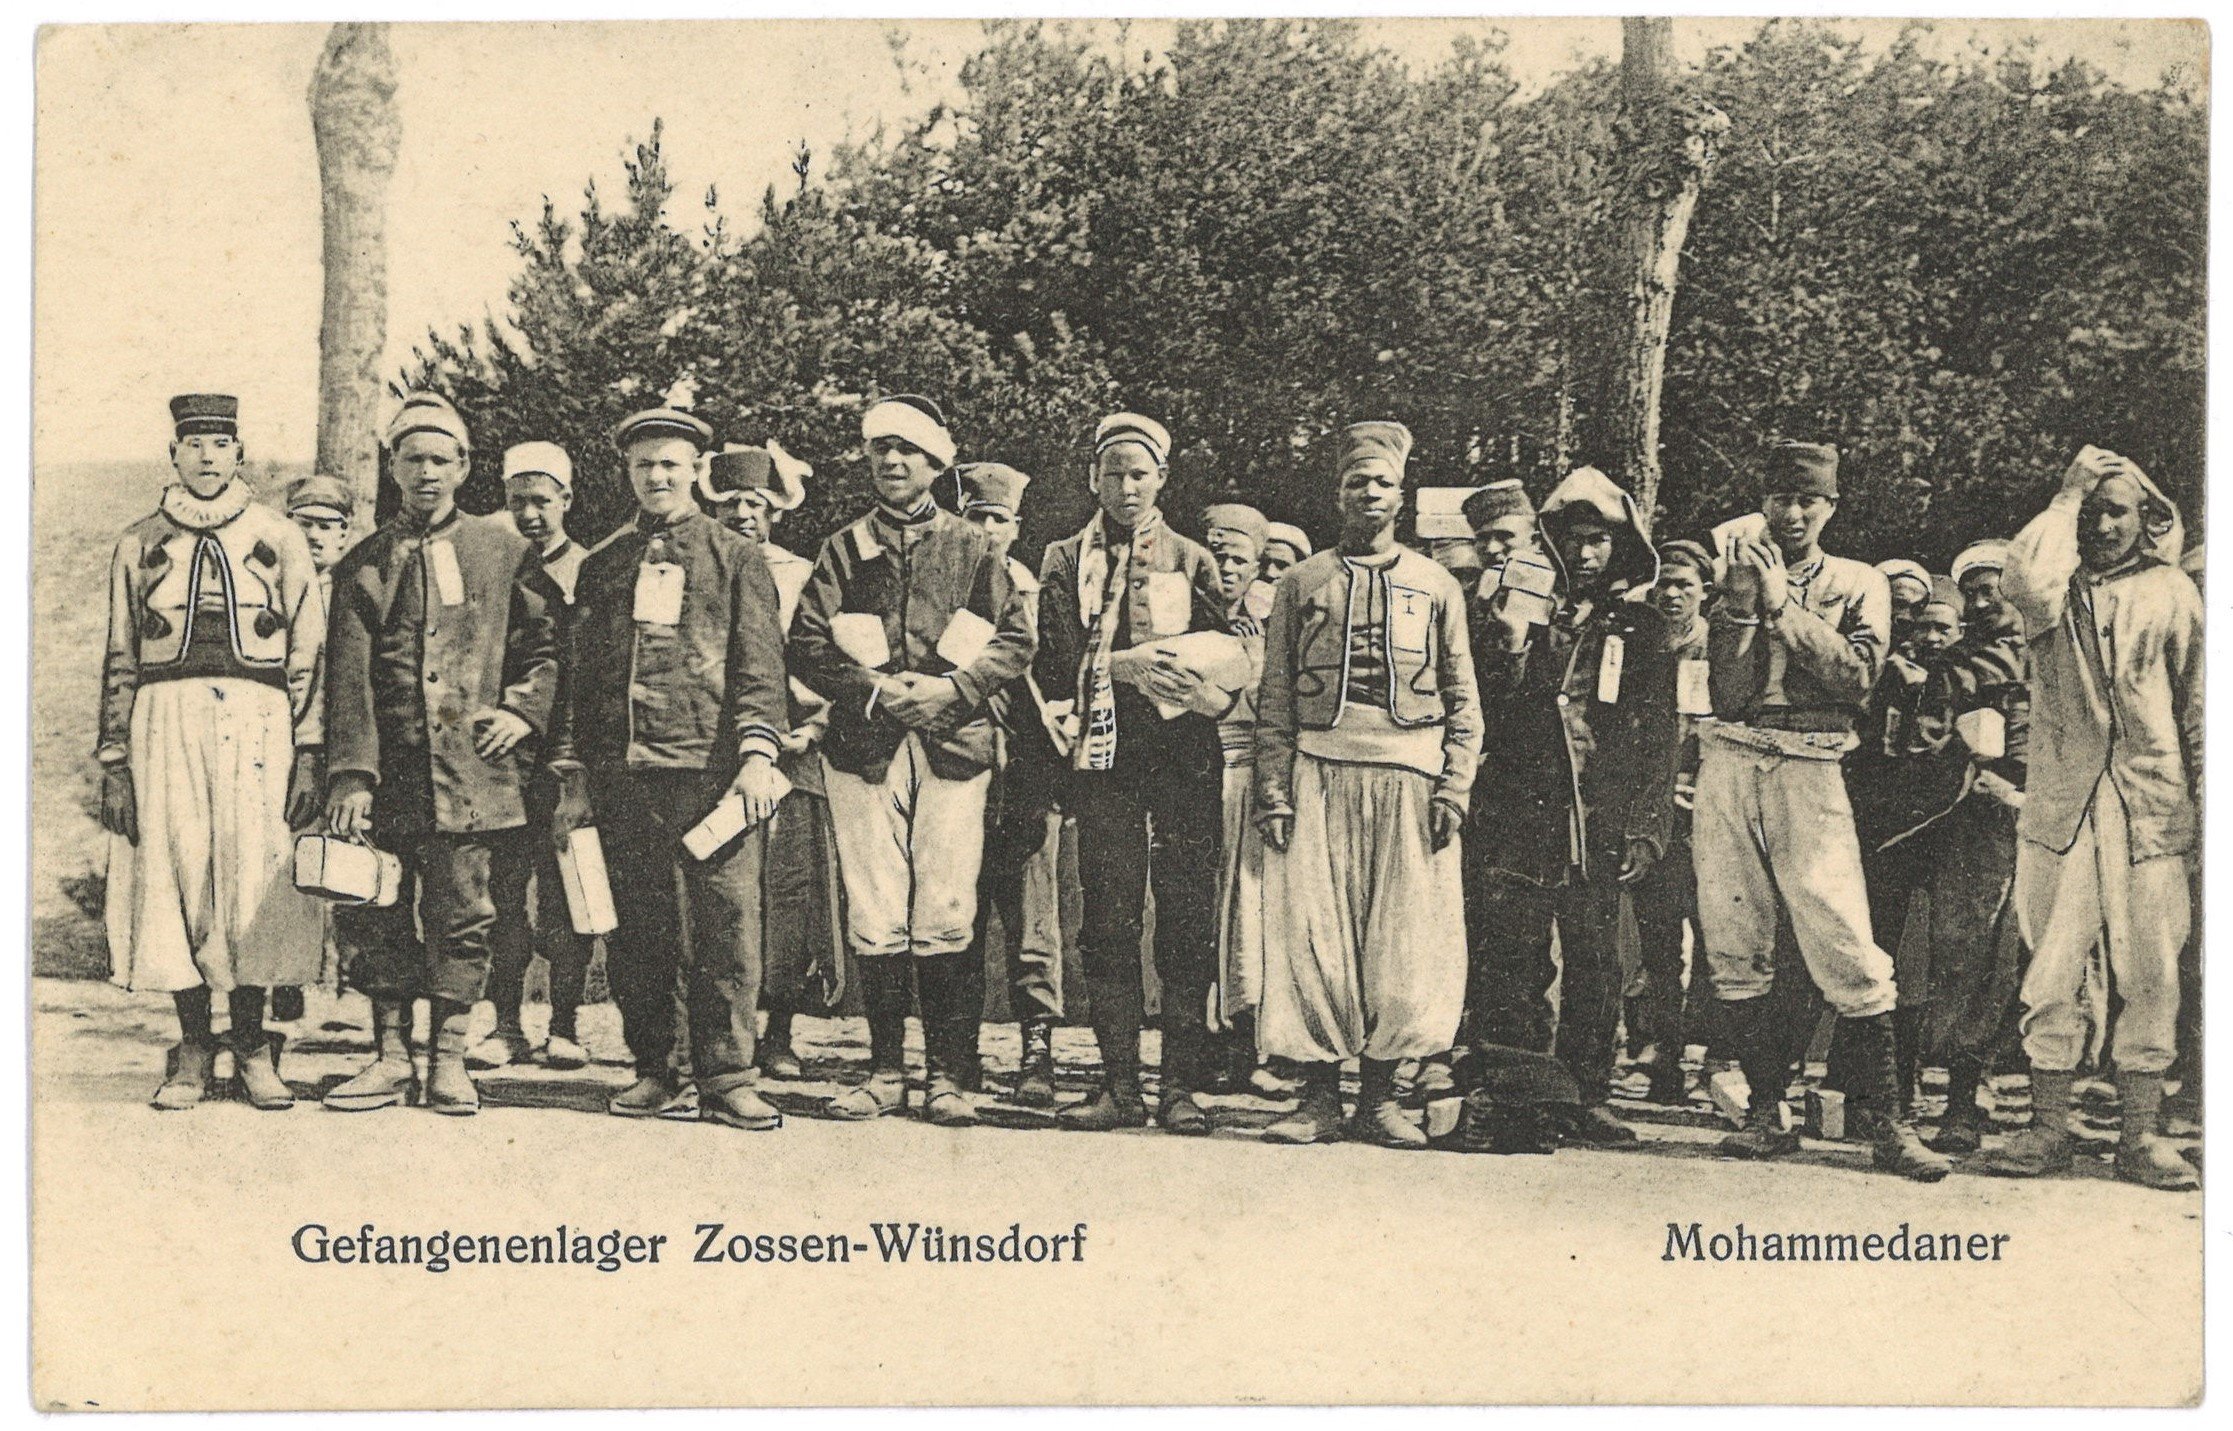 Wünsdorf: Kriegsgefangenenlager ("Halbmondlager"), Gruppenbild (Landesgeschichtliche Vereinigung für die Mark Brandenburg e.V., Archiv CC BY)